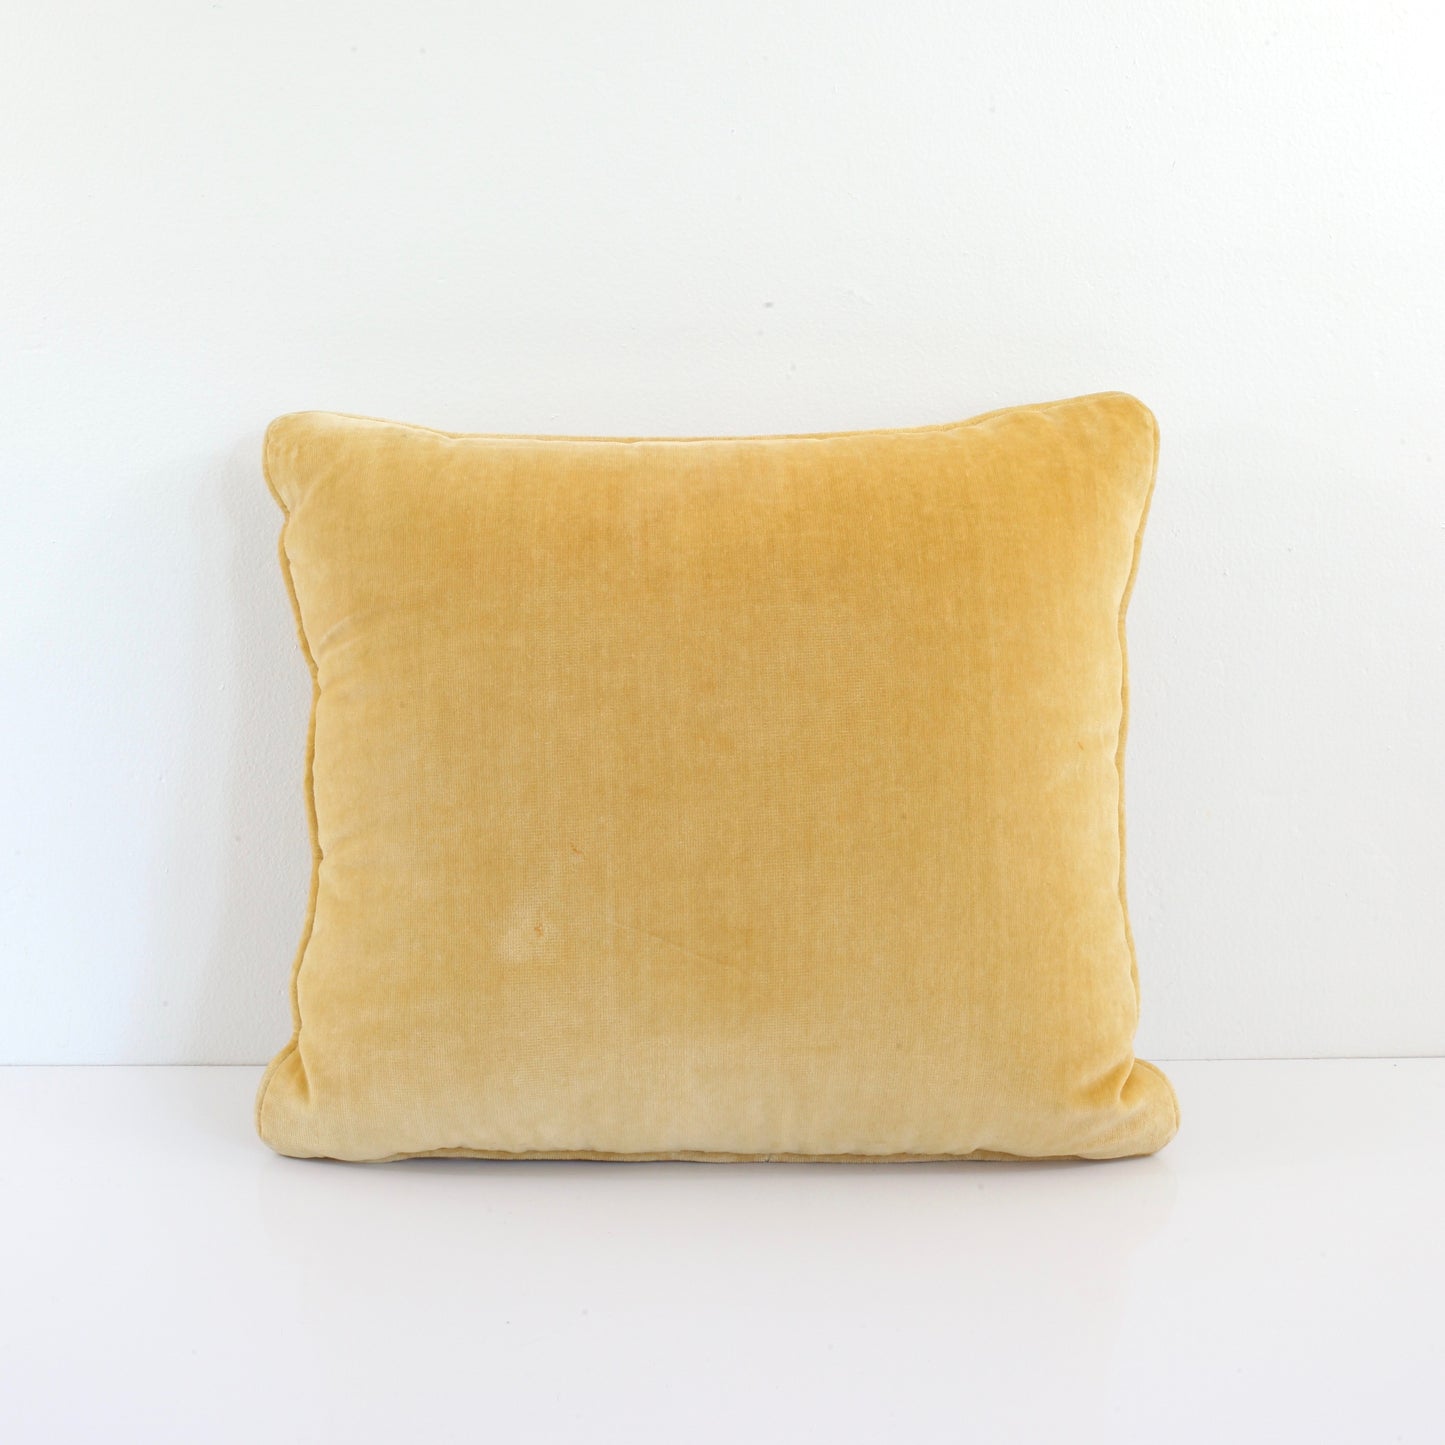 SOLD - Vintage Bargello Needlepoint Pillow